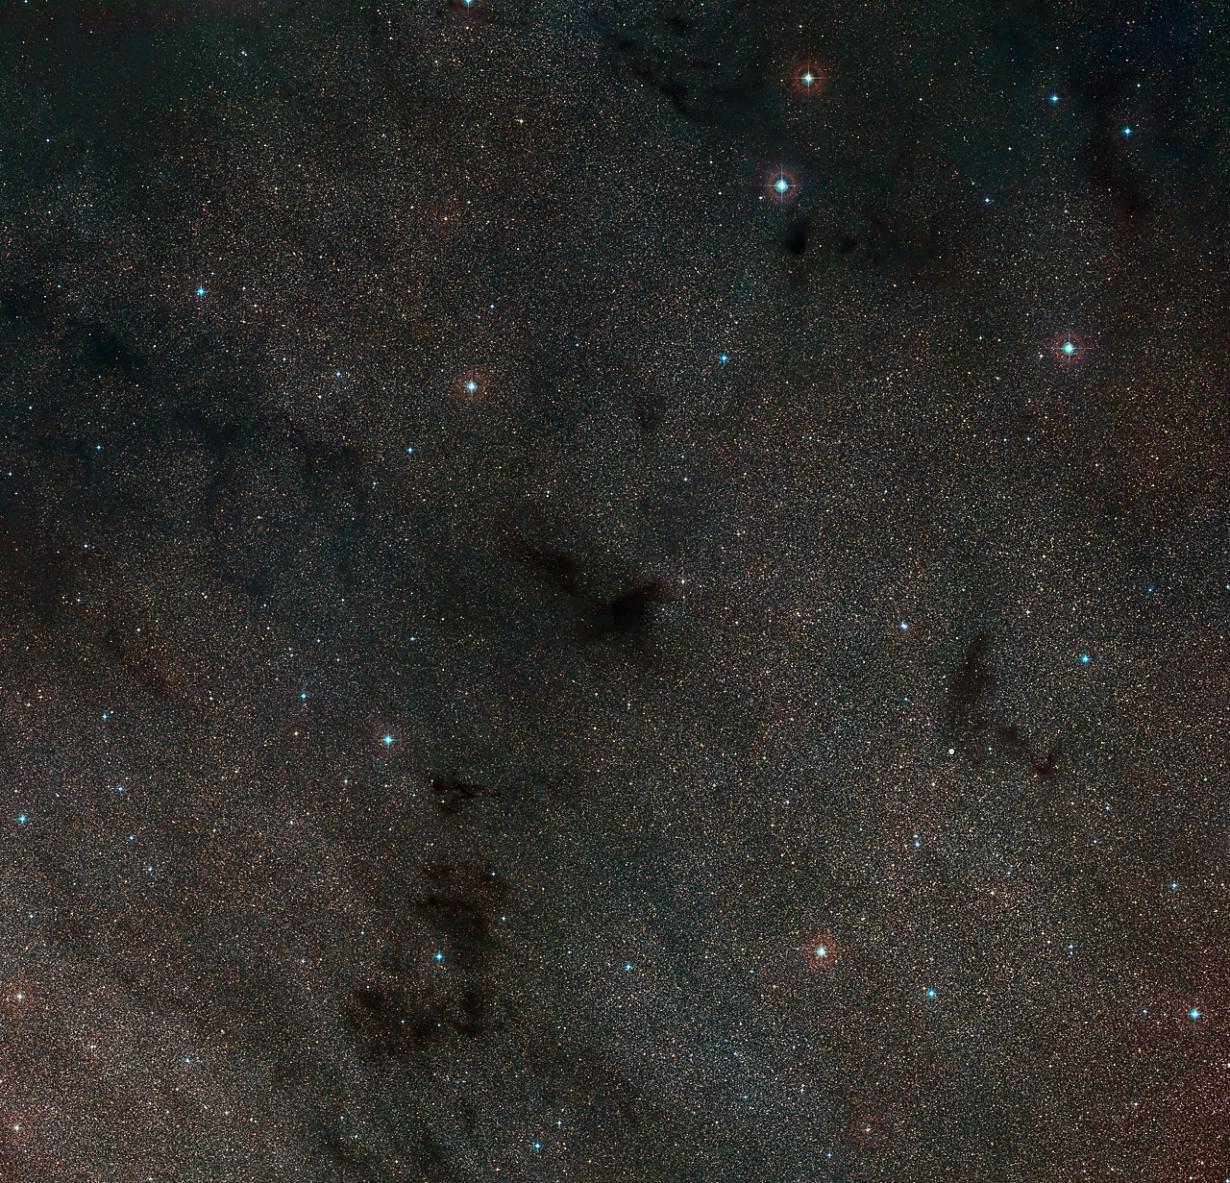 欧洲太空天文台公布巨蛇座巨型暗星云“林德暗星云483”(LDN 483)图像